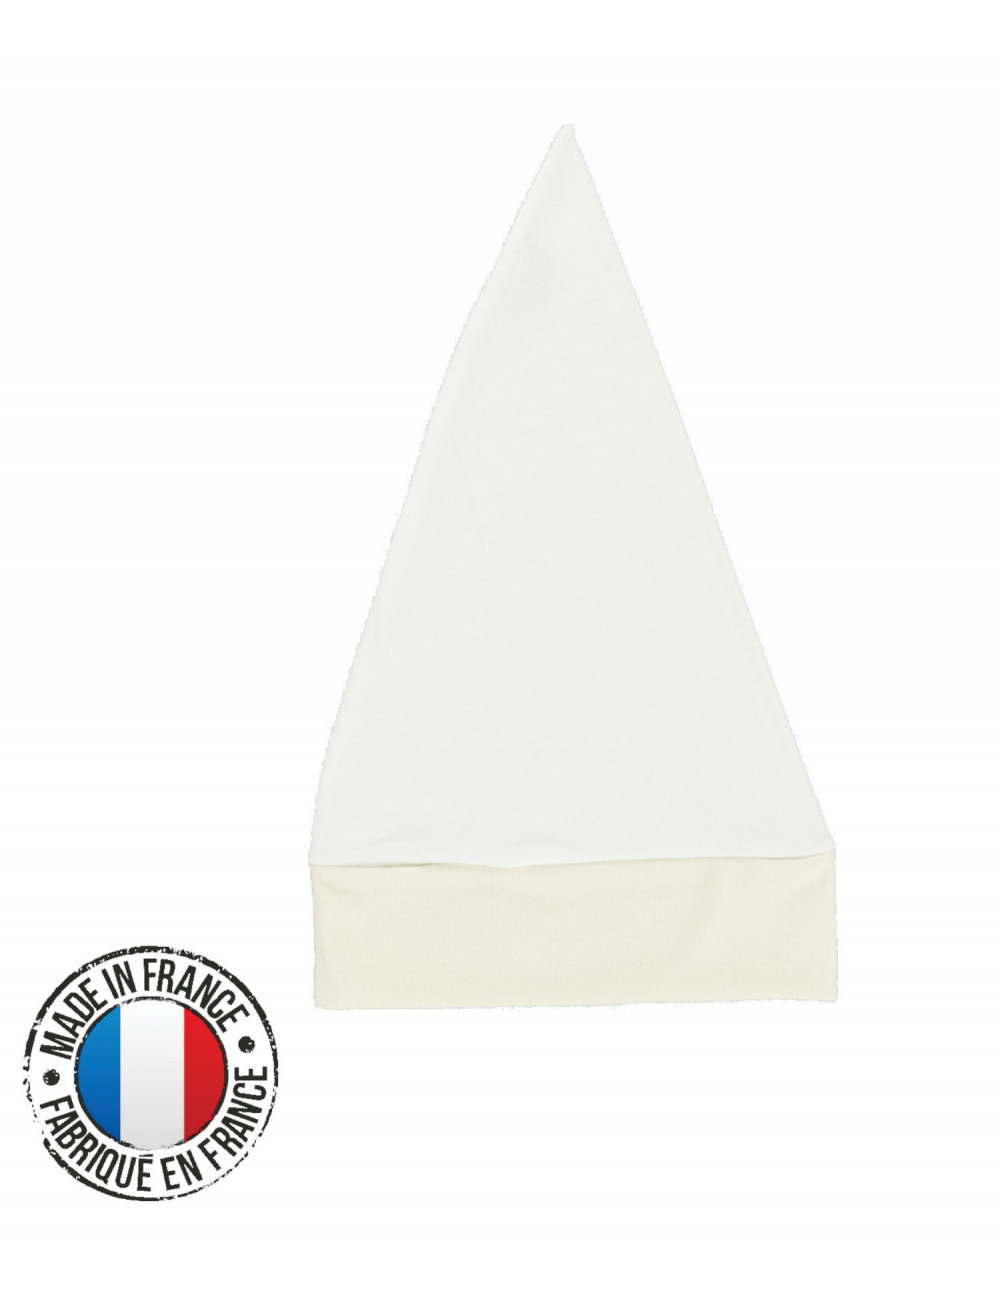 bonnet de nuit blanc - bonnet fabrique en france Reference : 3860